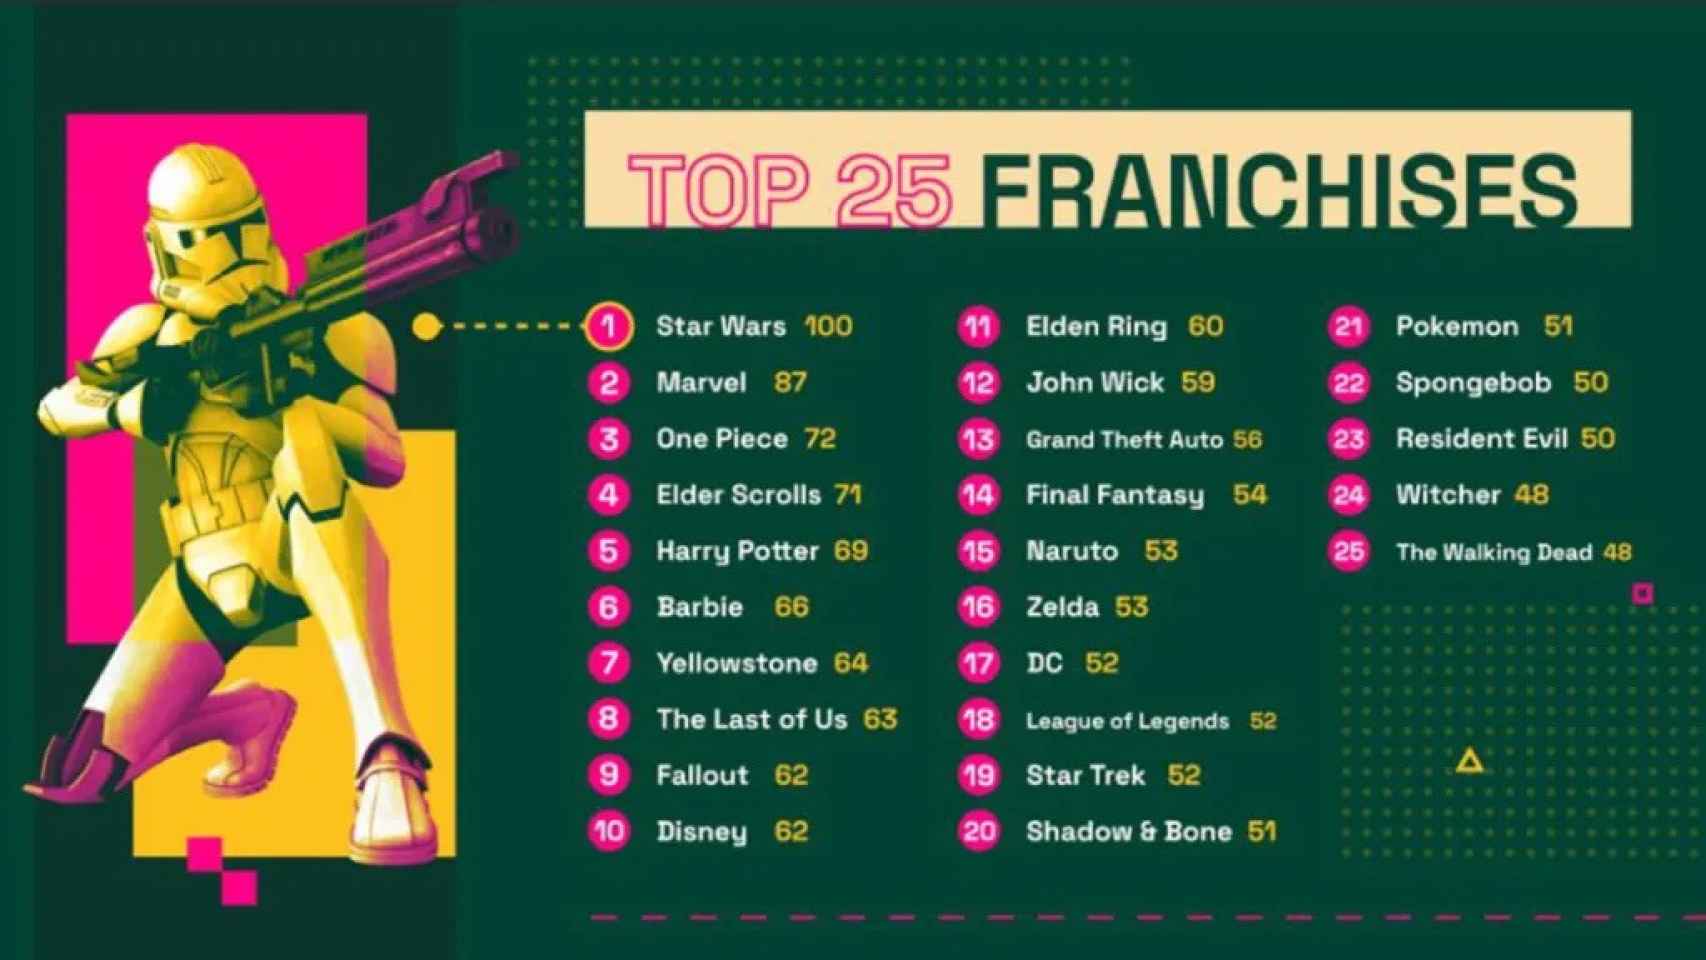 El Top 25 franquicias publicado por Fandom en 2023.